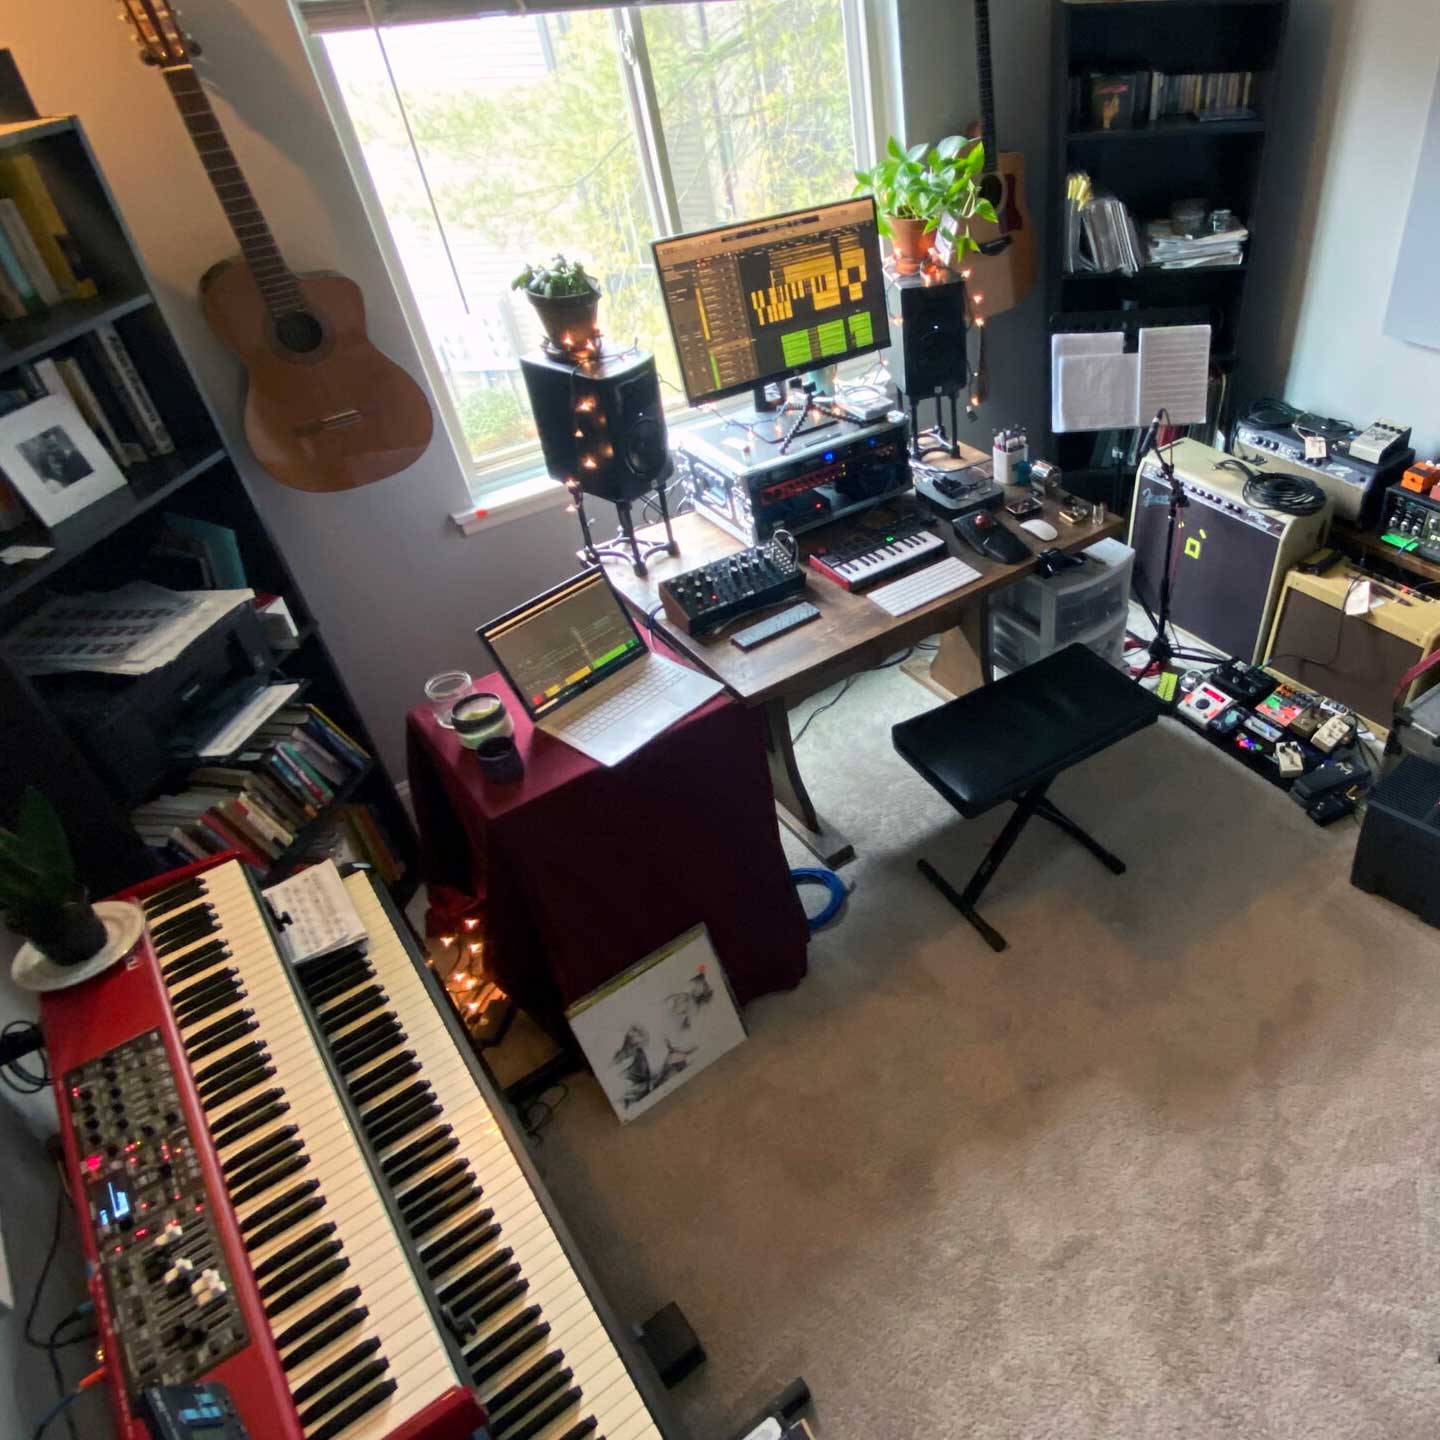 Studio à domicile avec un clavier, des amplis et d'autres équipements de musique